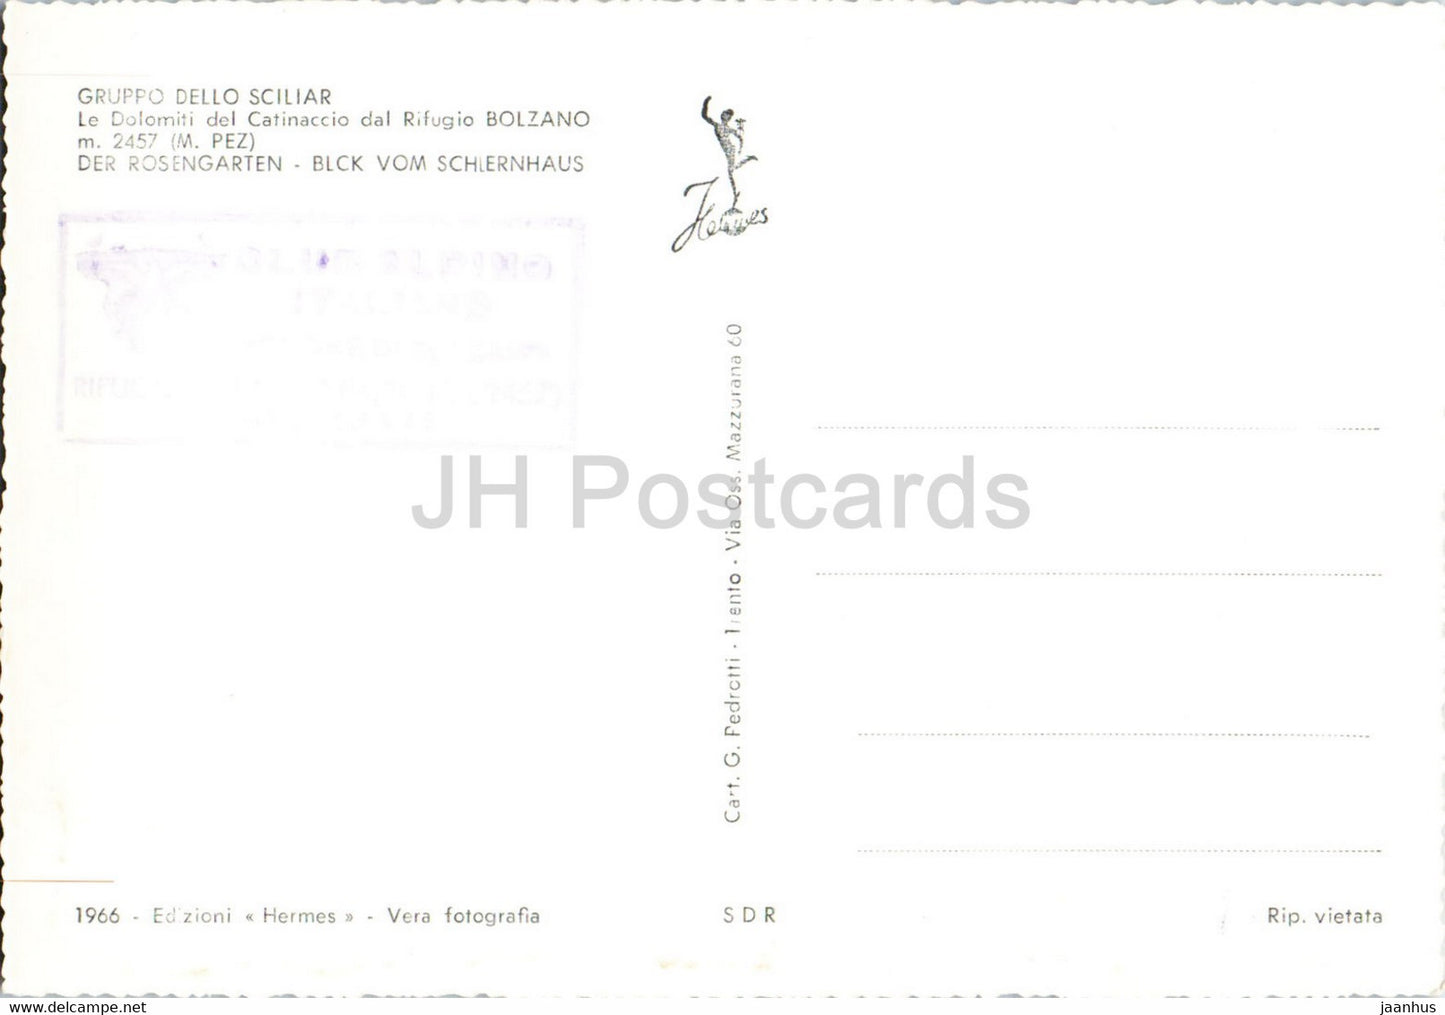 Gruppo Dello Sciliar - Catinaccio - Rifugio Bolzano - Italie - carte postale ancienne - inutilisée